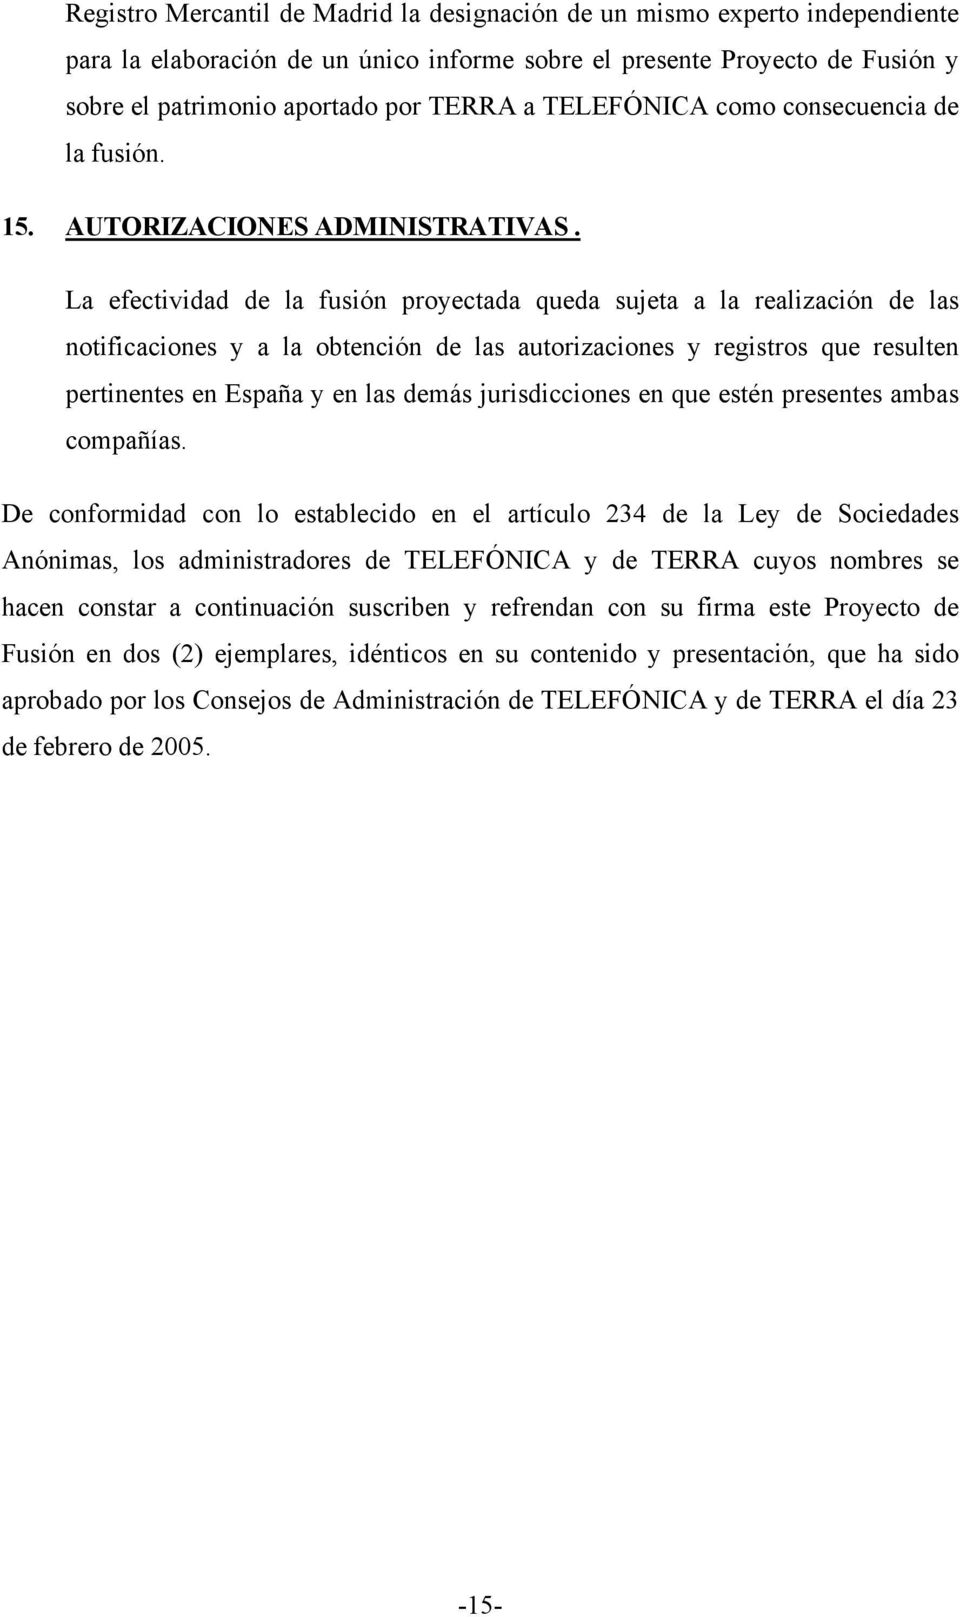 La efectividad de la fusión proyectada queda sujeta a la realización de las notificaciones y a la obtención de las autorizaciones y registros que resulten pertinentes en España y en las demás